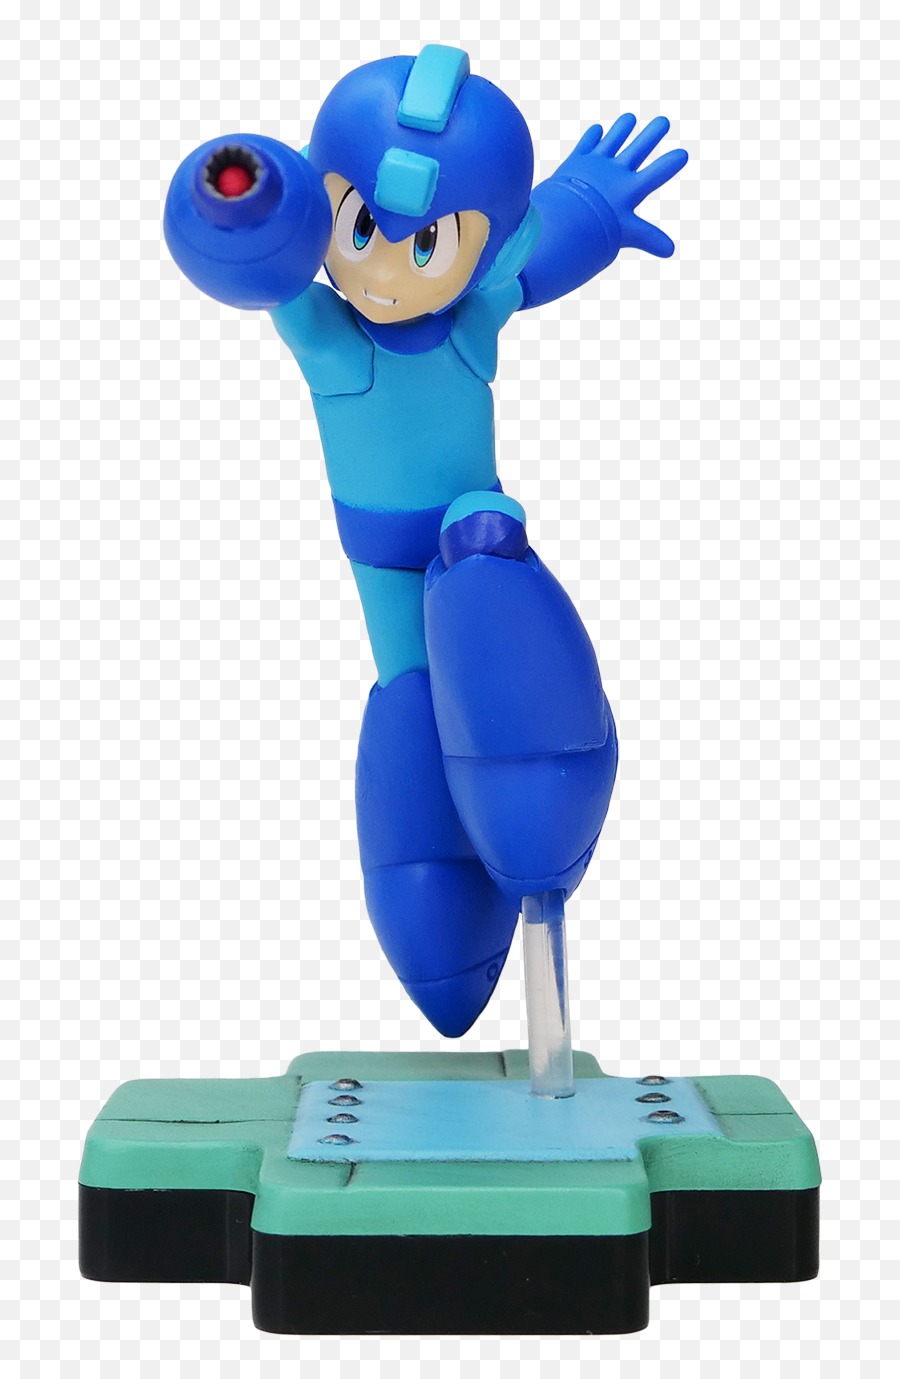 Totaku - Totaku Collection Mega Man Png,Mega Man Transparent